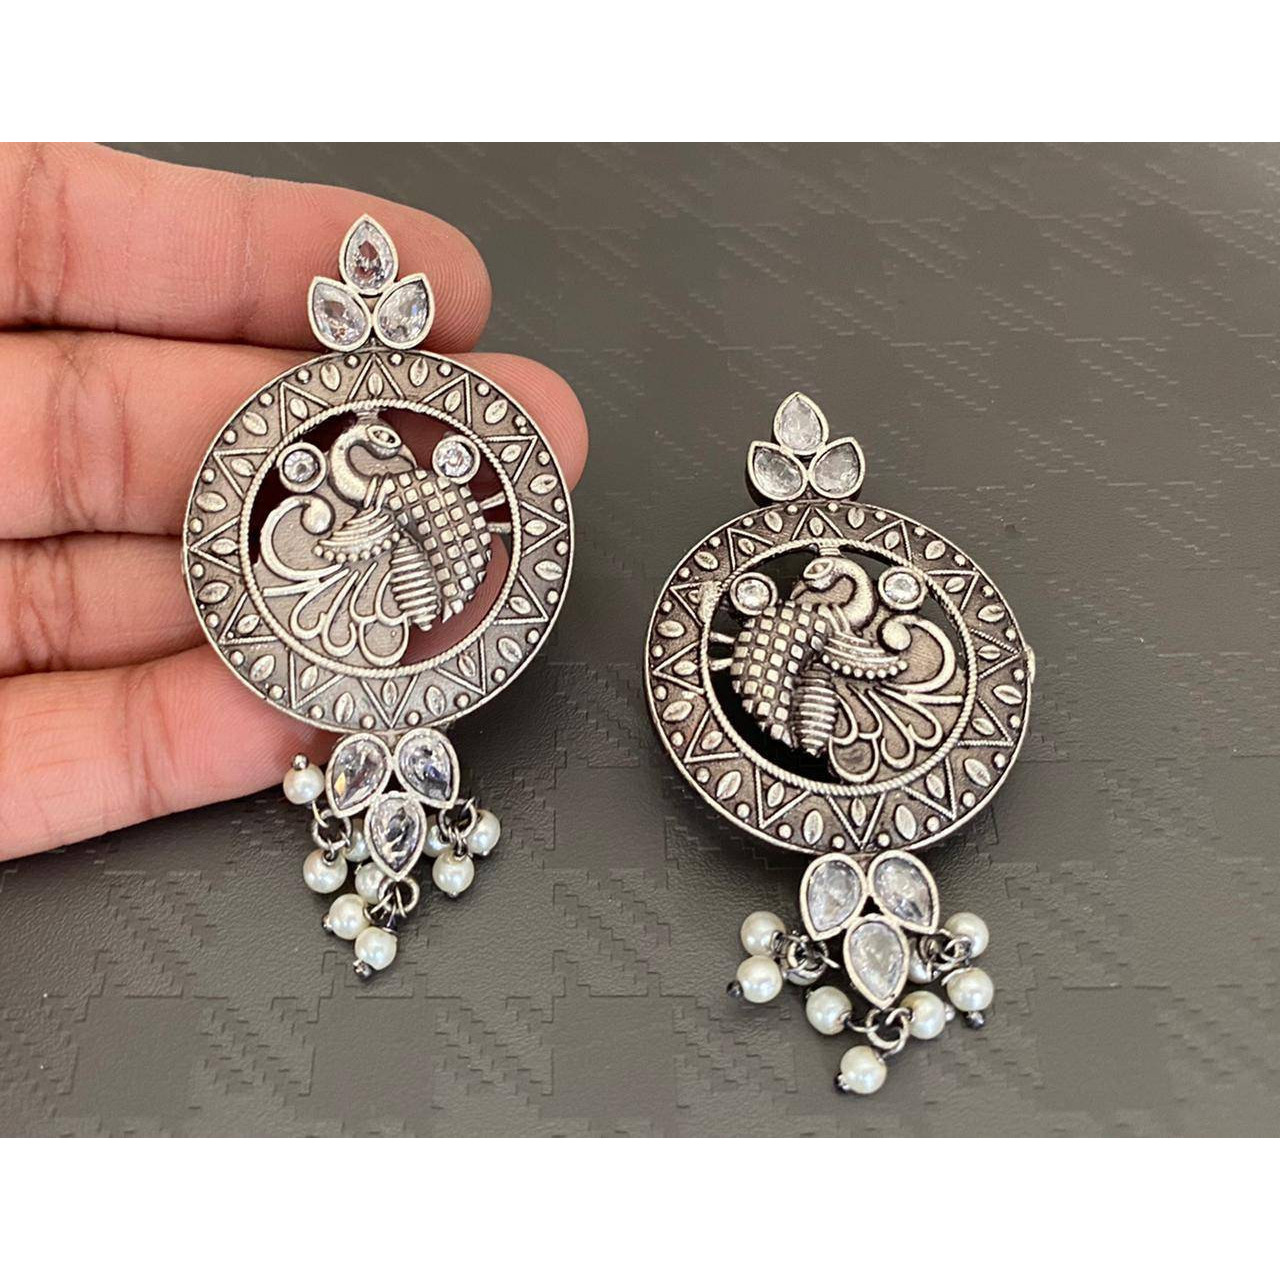 Stone earrings, Indian oxidised earrings, long earrings, giftsfor her, antique silver earrings, tribal jewellery, temple jewellery, green